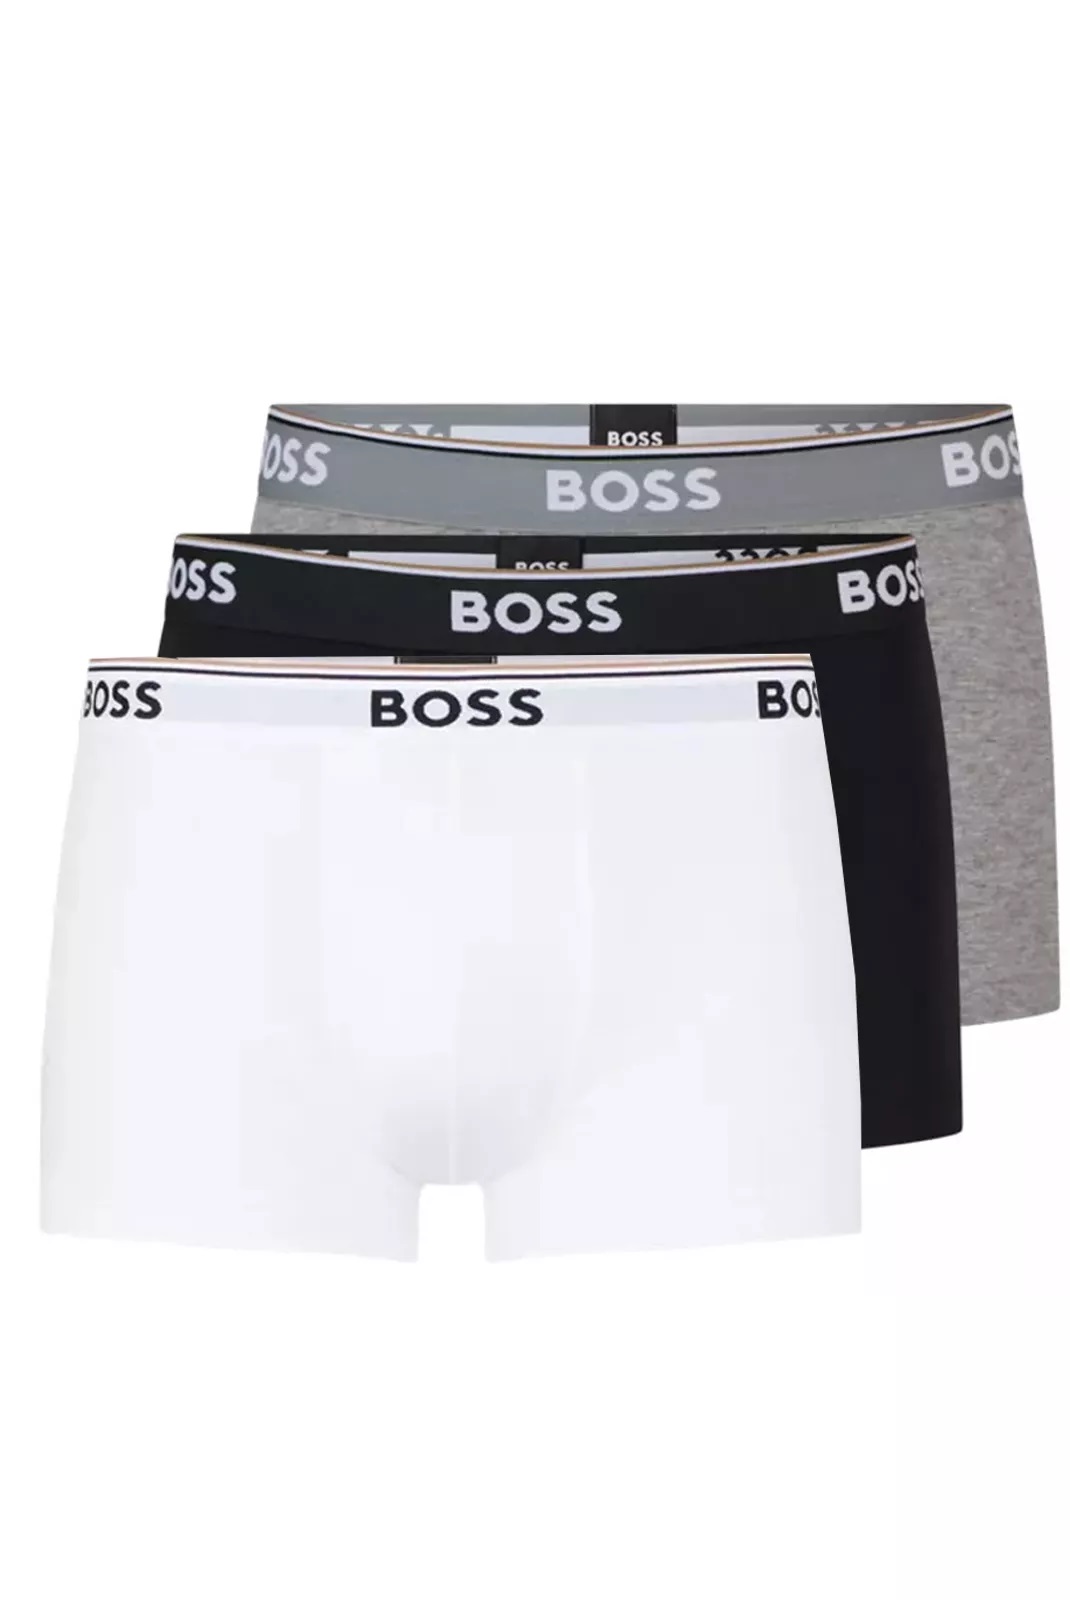 Hugo Boss pánské boxerky 3pack černé, šedé, bílé Velikost: M